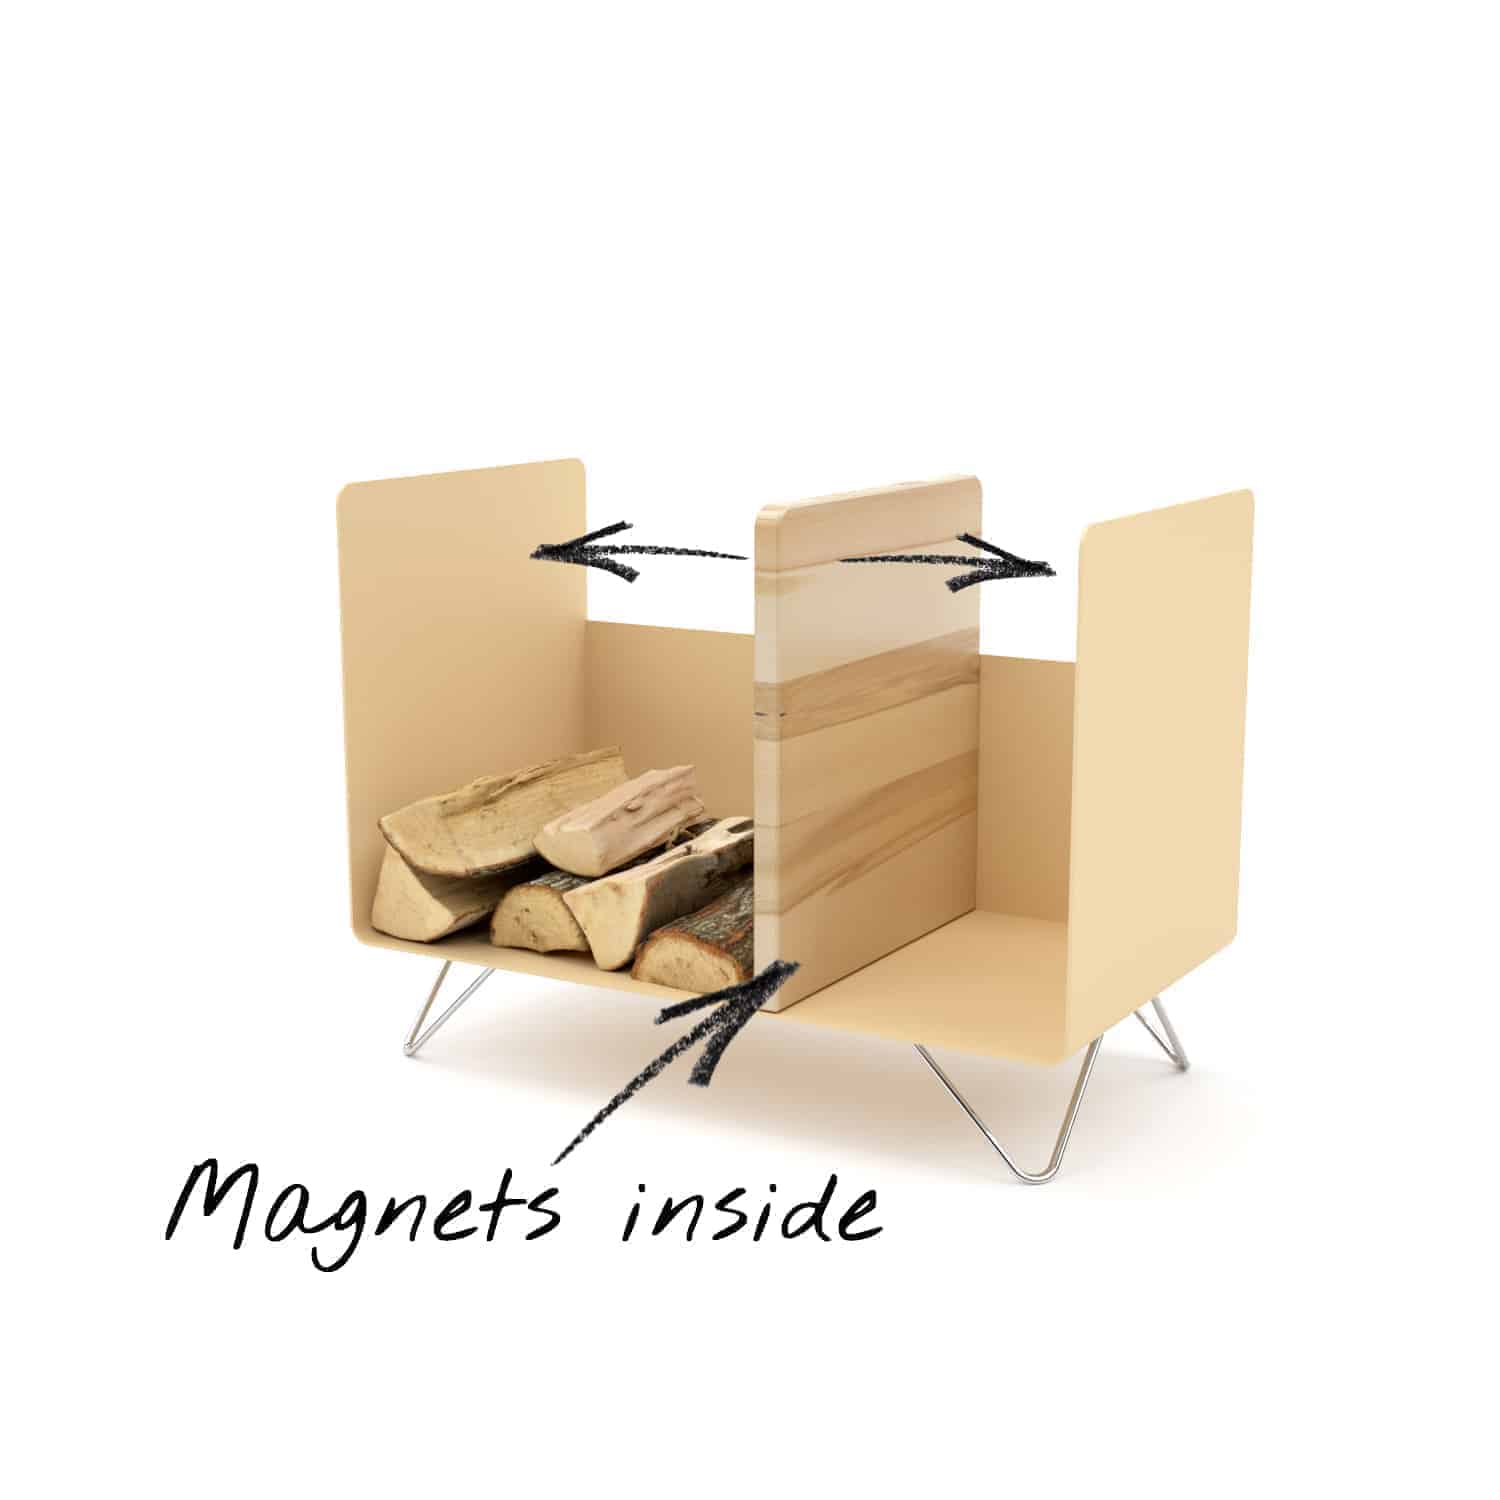 kaminholzregal-innen-brennholzregal-holzaufbewahrung-metall-design-modern-holz-aufbewahrung-kaminholz-brennholz-stahl-beige-edelstahl-buche-magnets-inside-magic-2-new